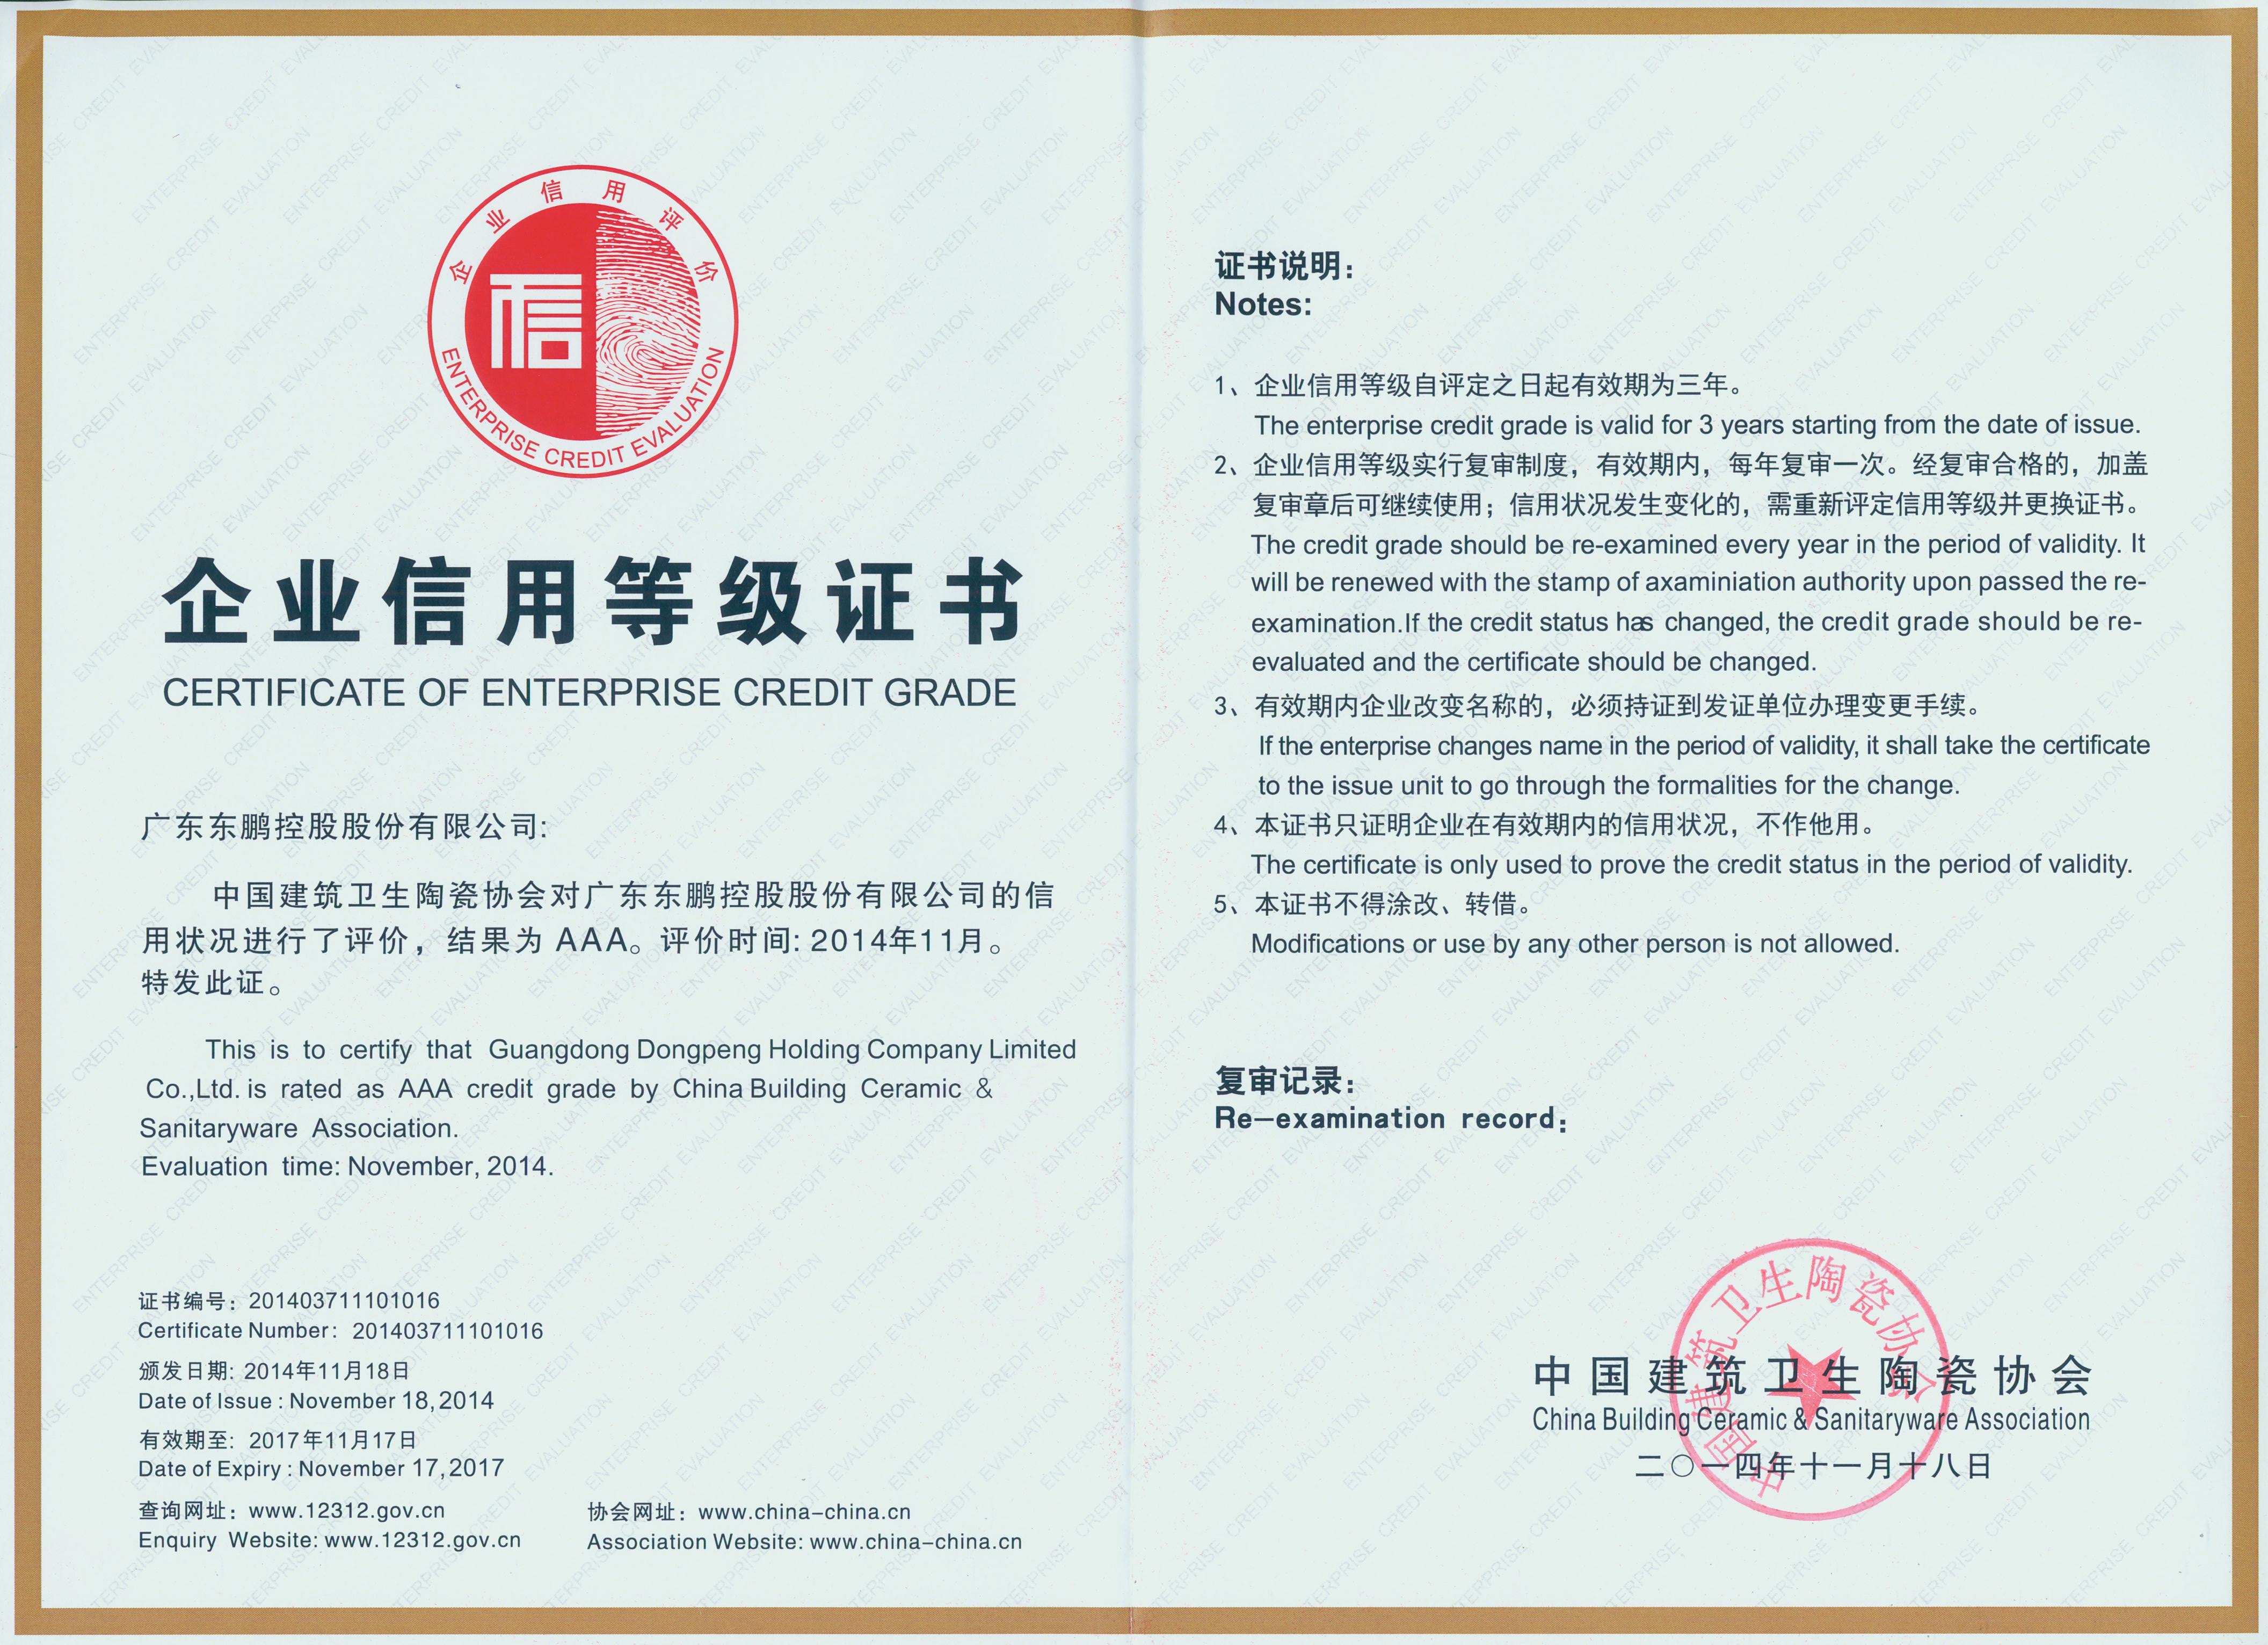 141118 中国建筑卫生陶瓷协会 企业信用等级A